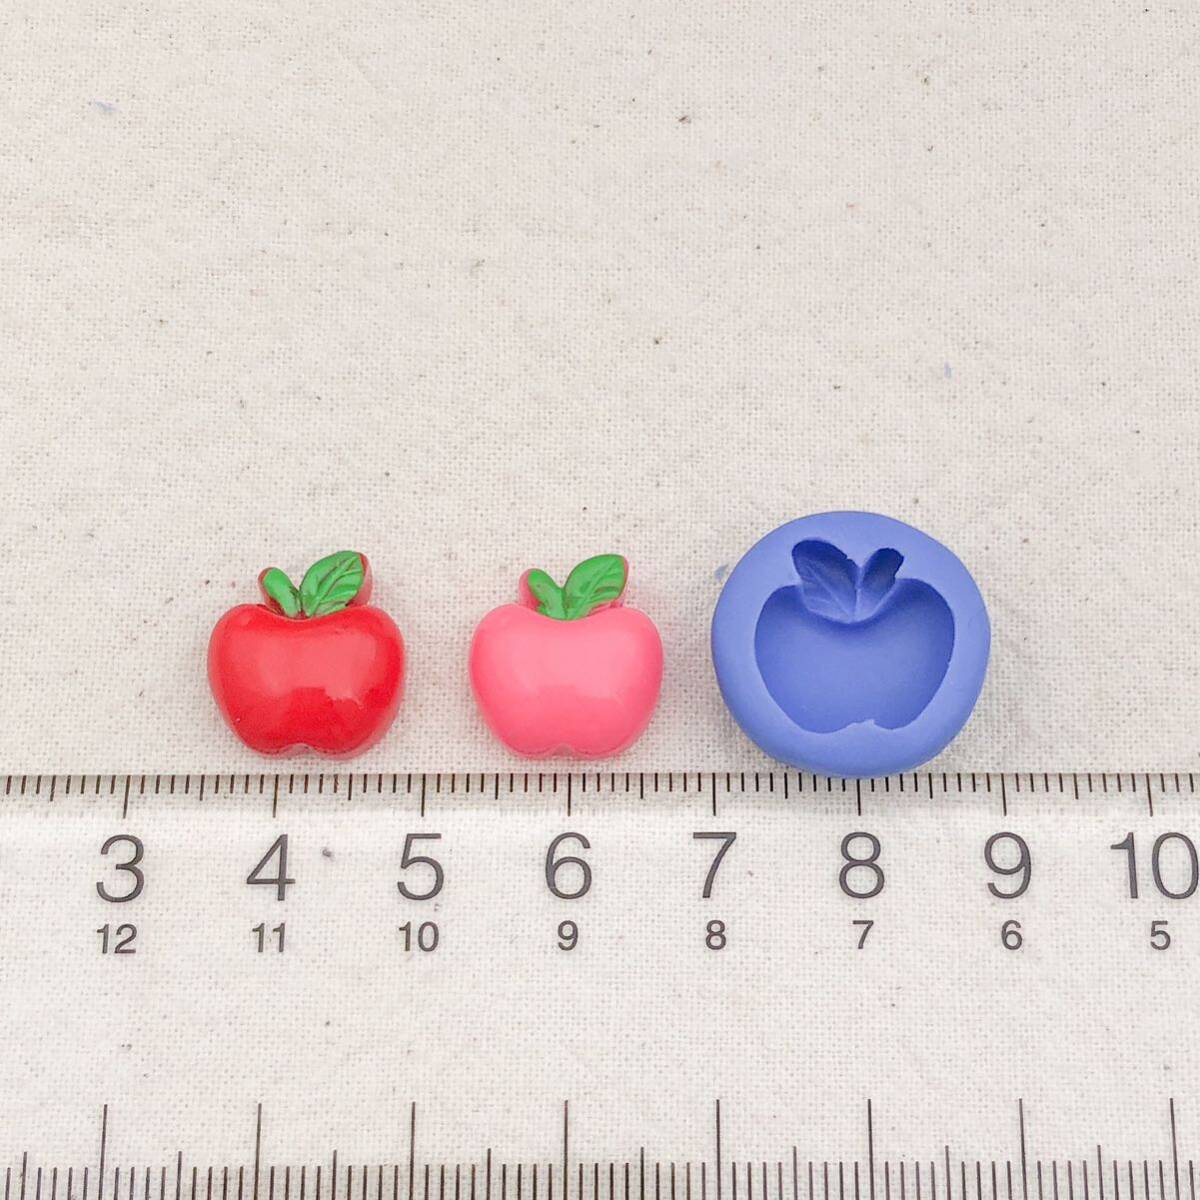 32 リンゴ型 フルーツ 樹脂粘土 スイーツ りんご デコ パーツ アップル 果物 ネイル ブルーミックス シリコン モールド ハンドメイド_画像2